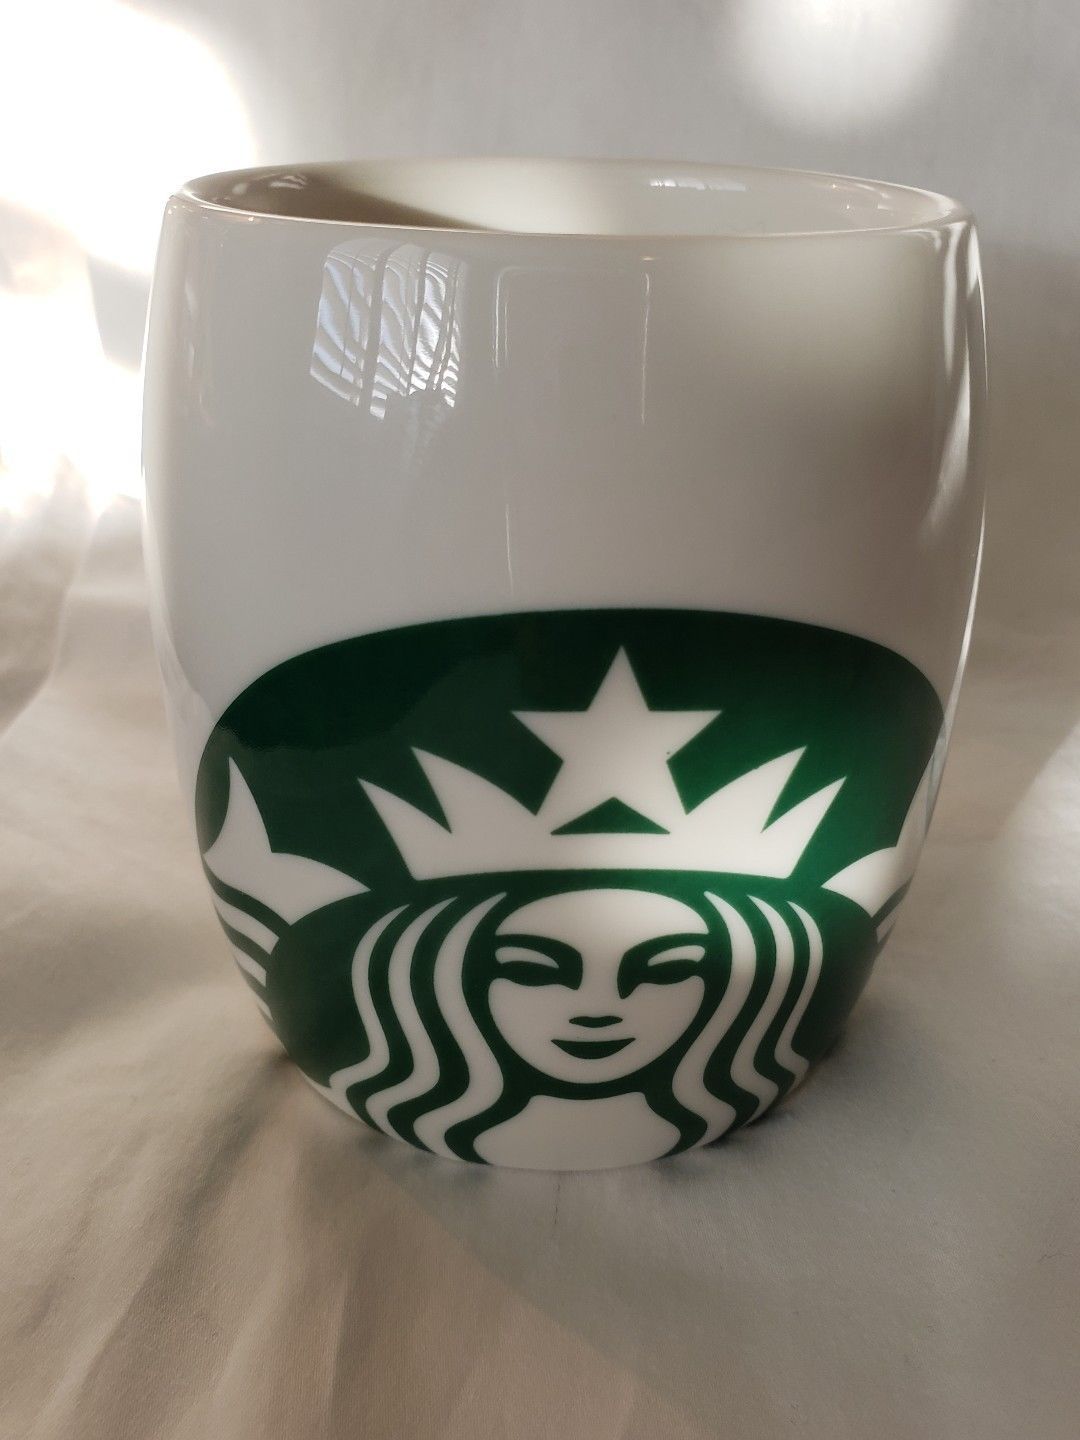 Excellent Starbucks 2010 Coffee Mug Cup White w/ Green Mermaid Logo 14 oz. - $13.00